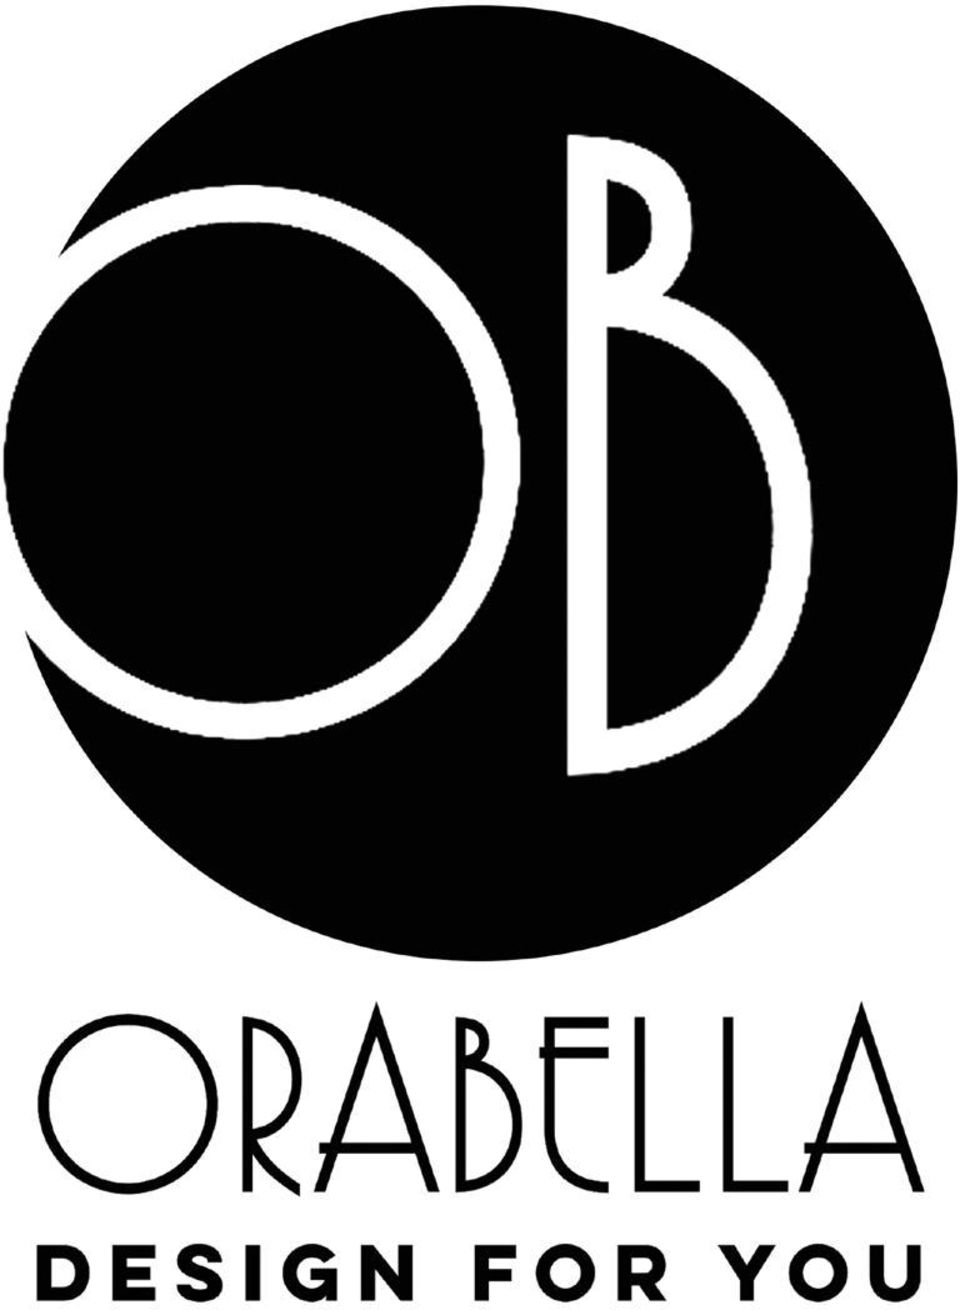 Orabella